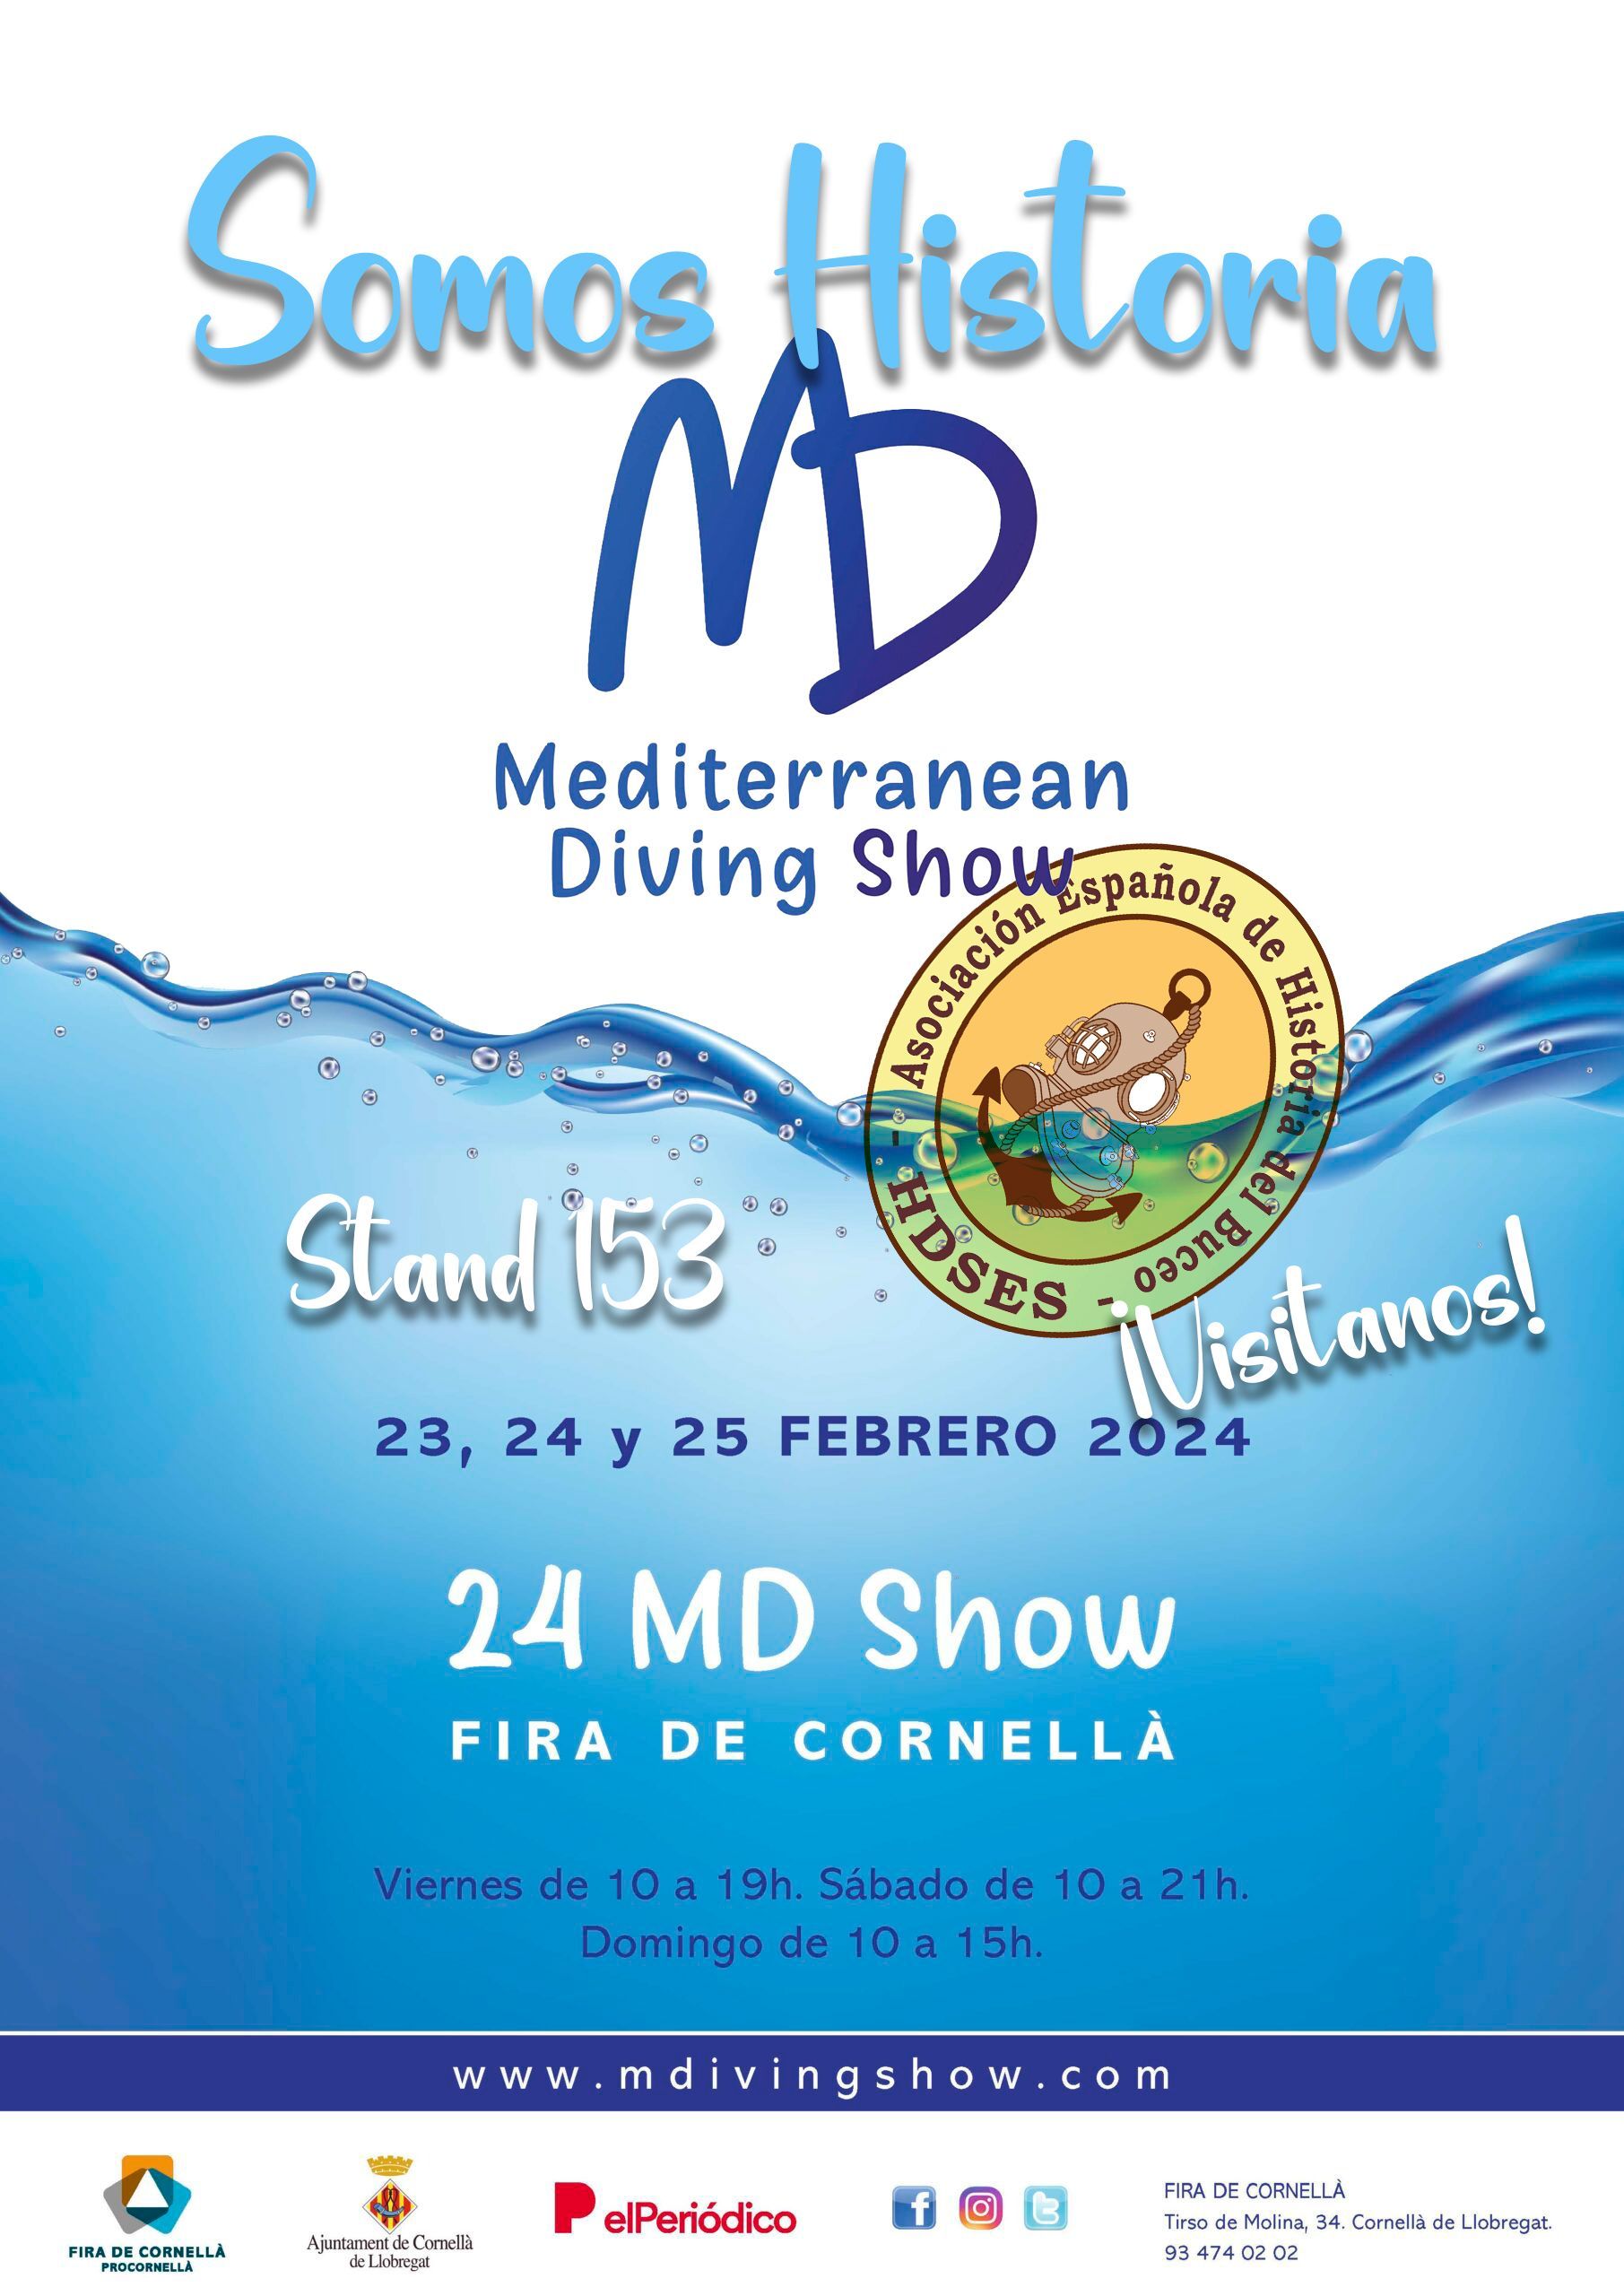 En el Mediterranean Diving Show, la HDSES somos Historia